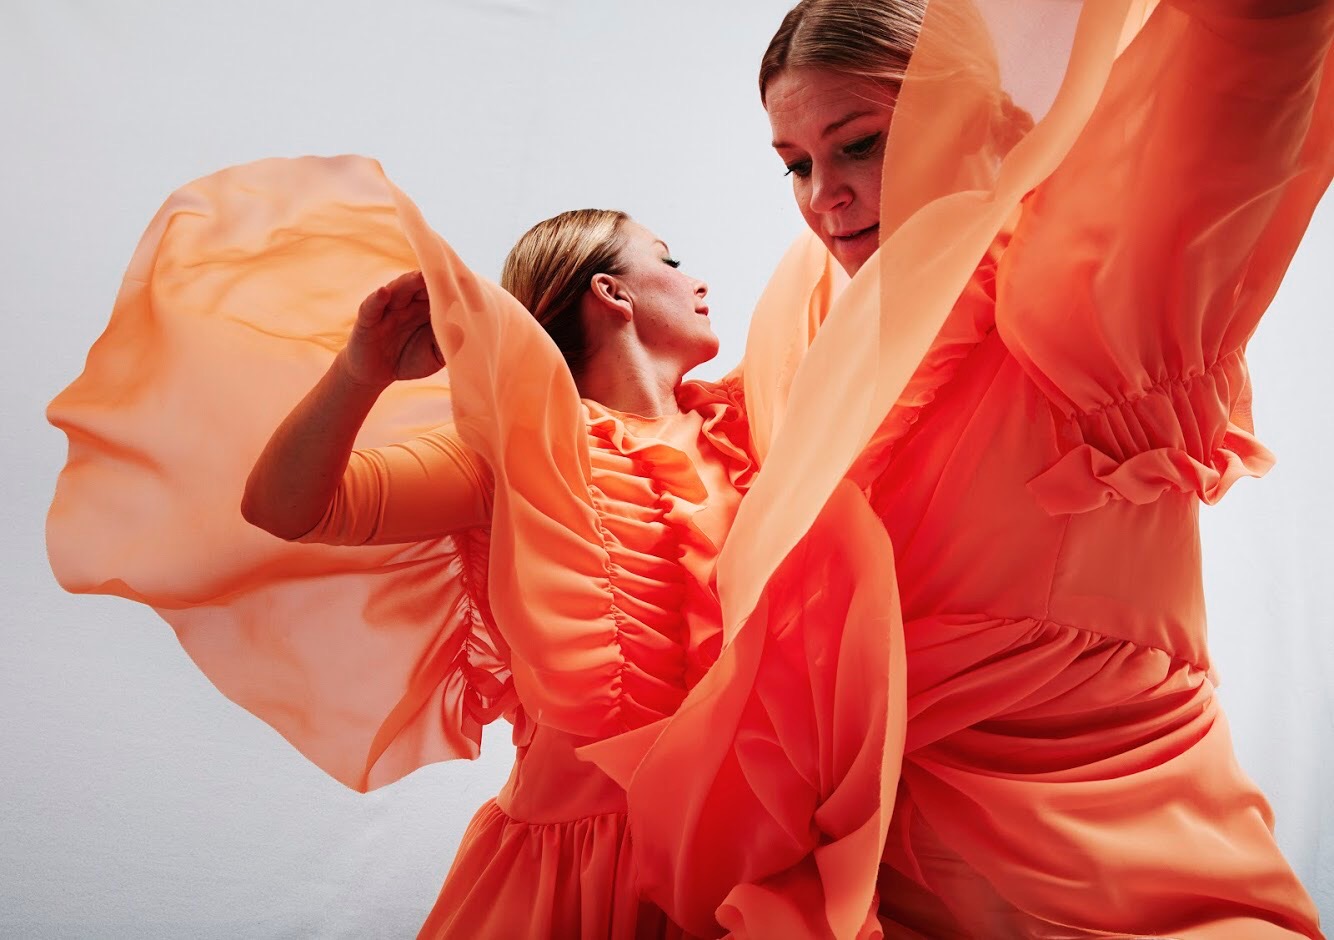 Två dansare viftar med armarna och har orange kostym på.